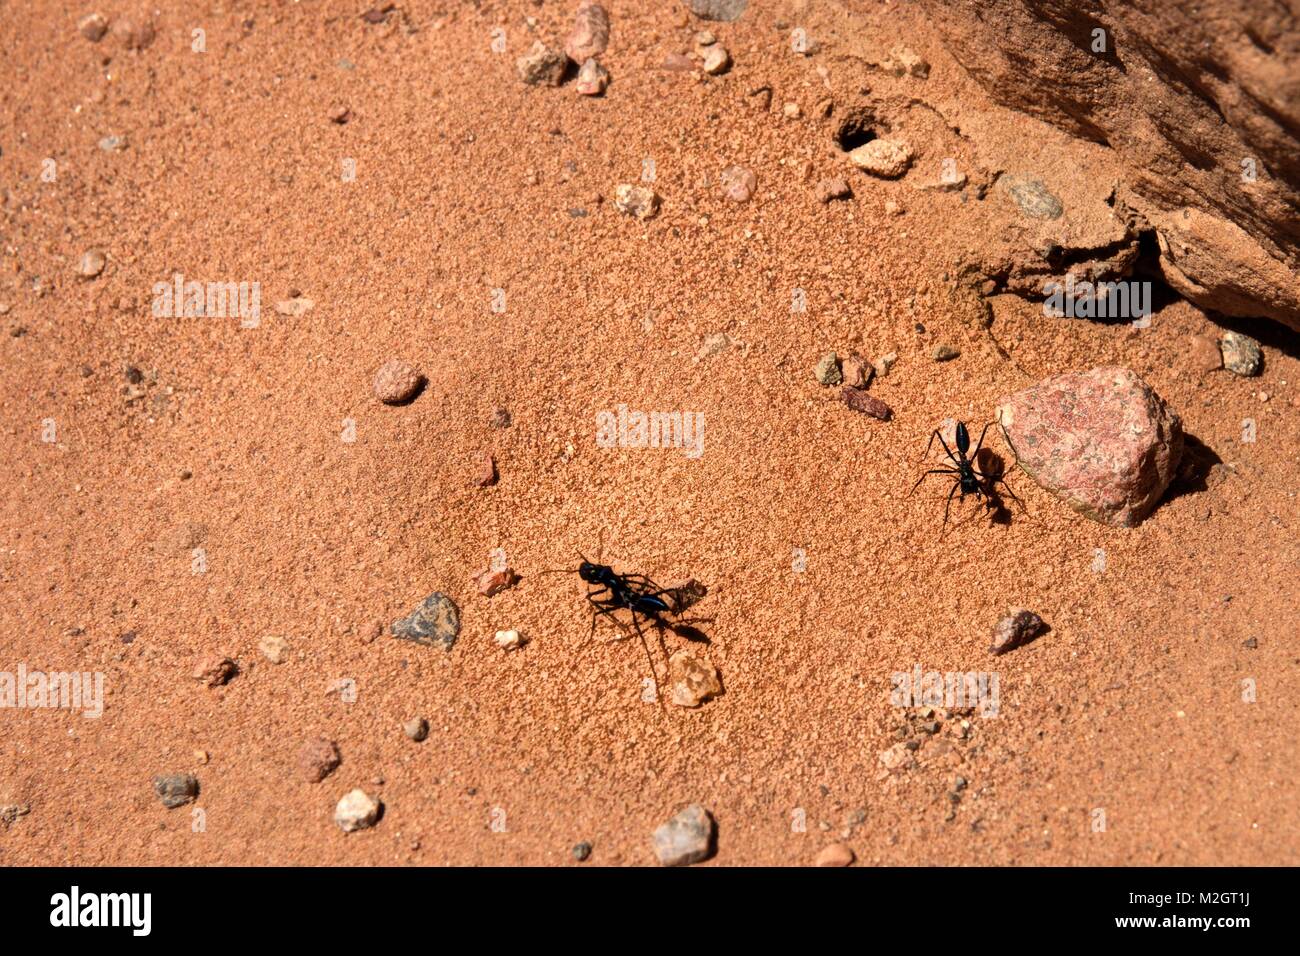 Riesige Ameisen in rotem Sand, Wüste des Wadi Rum Wüste, Jordanien Stockfoto